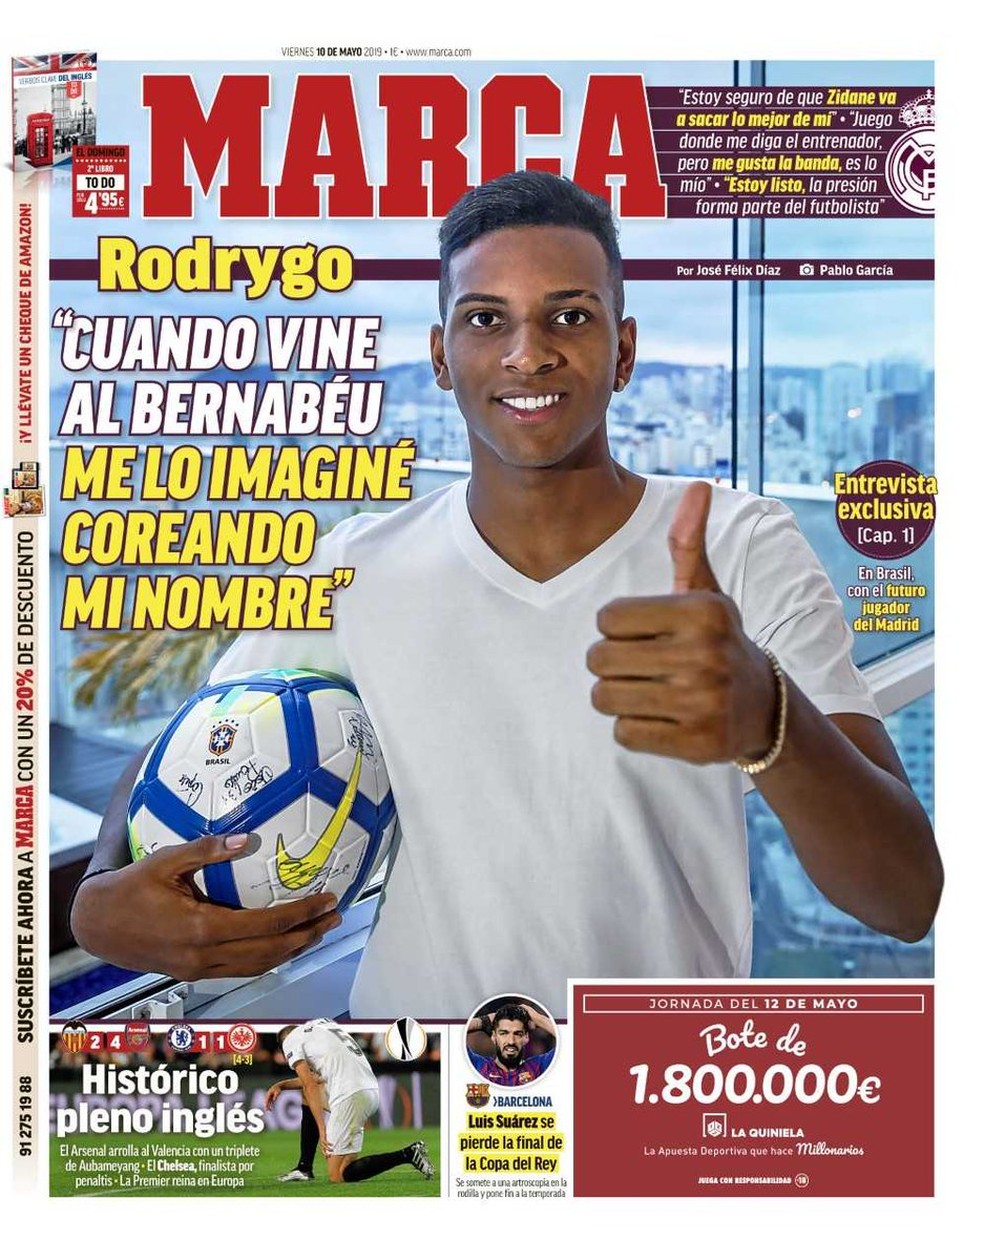 Rodrygo na capa do Marca — Foto: Reprodução / Marca